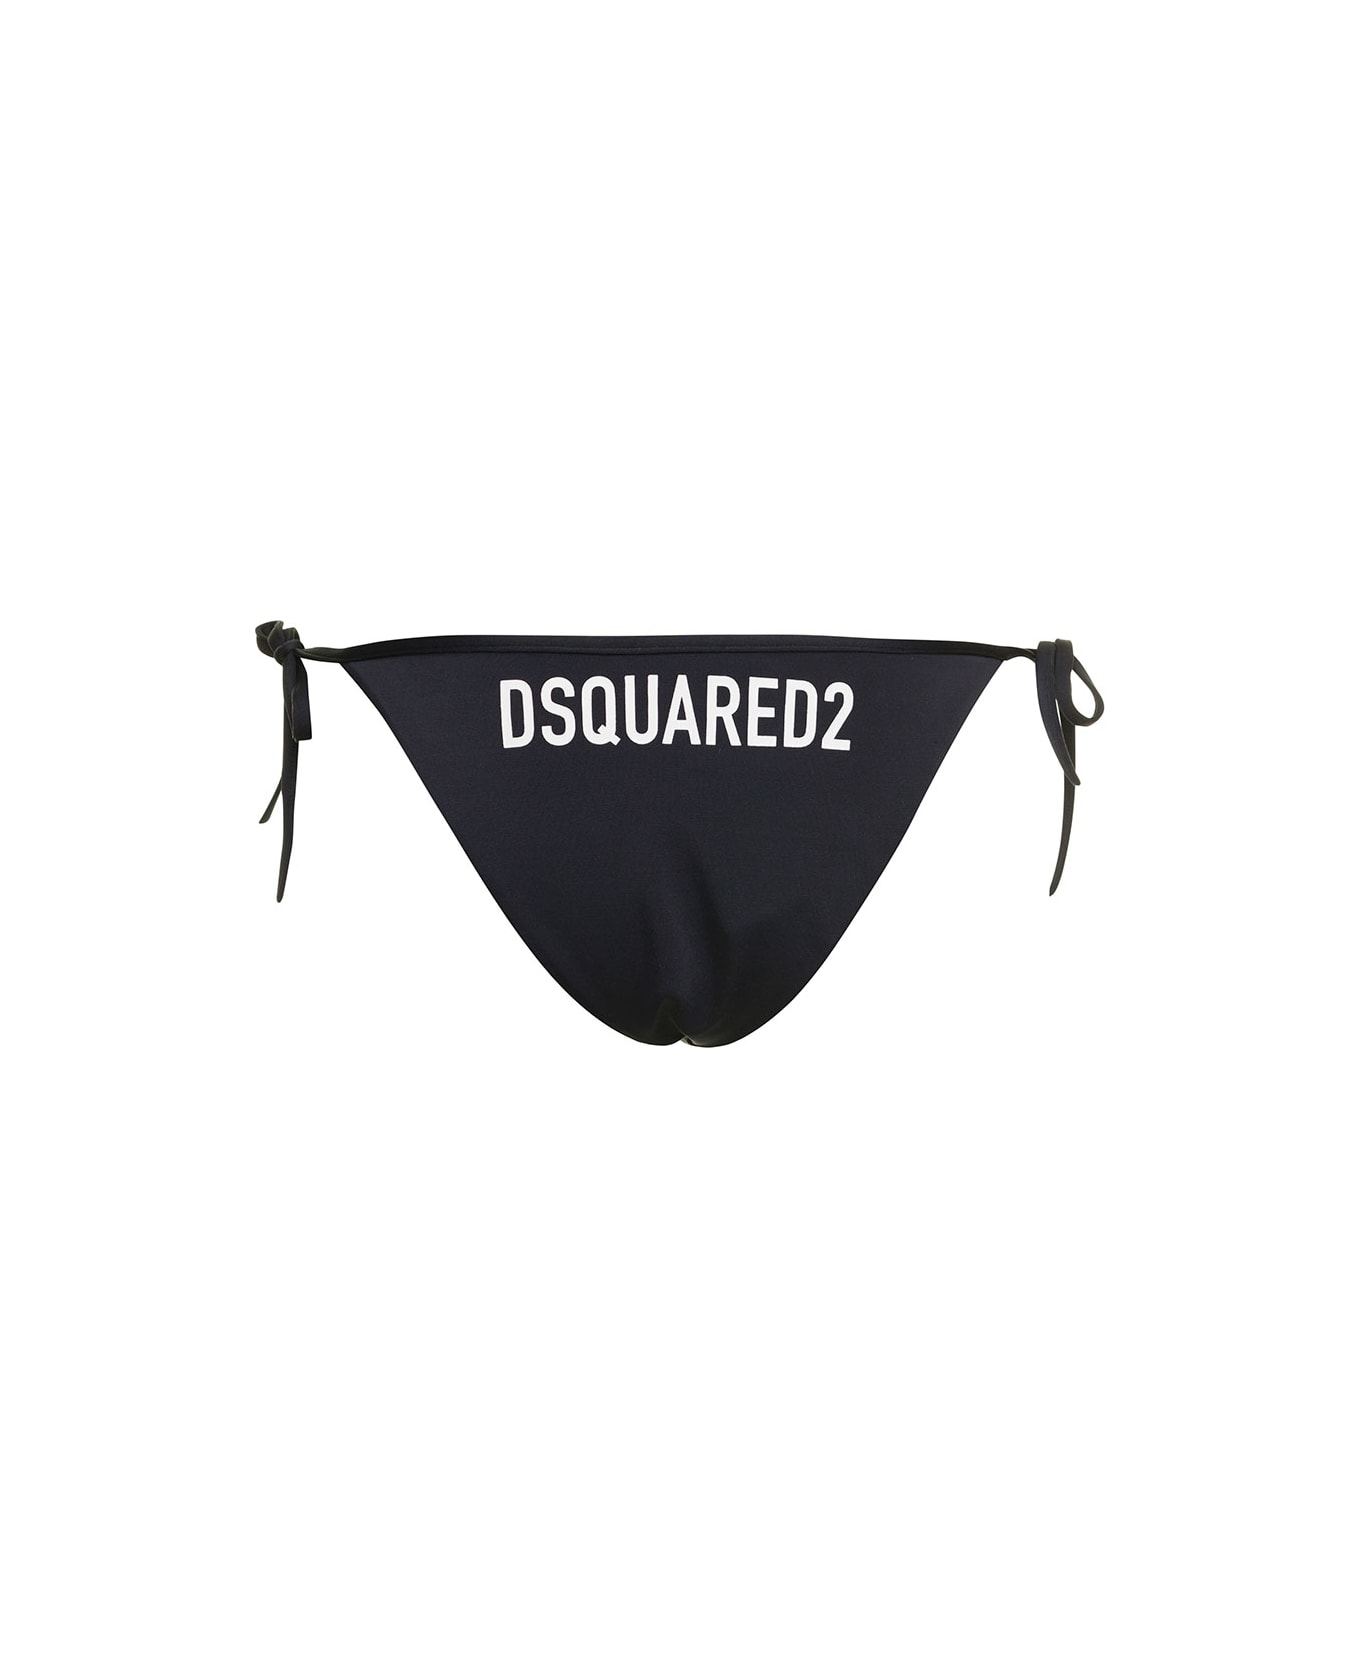 Dsquared2 Black Swim Bikini Bottom With Lettering In Nylon Stretch Woman Dsquared2 - Black